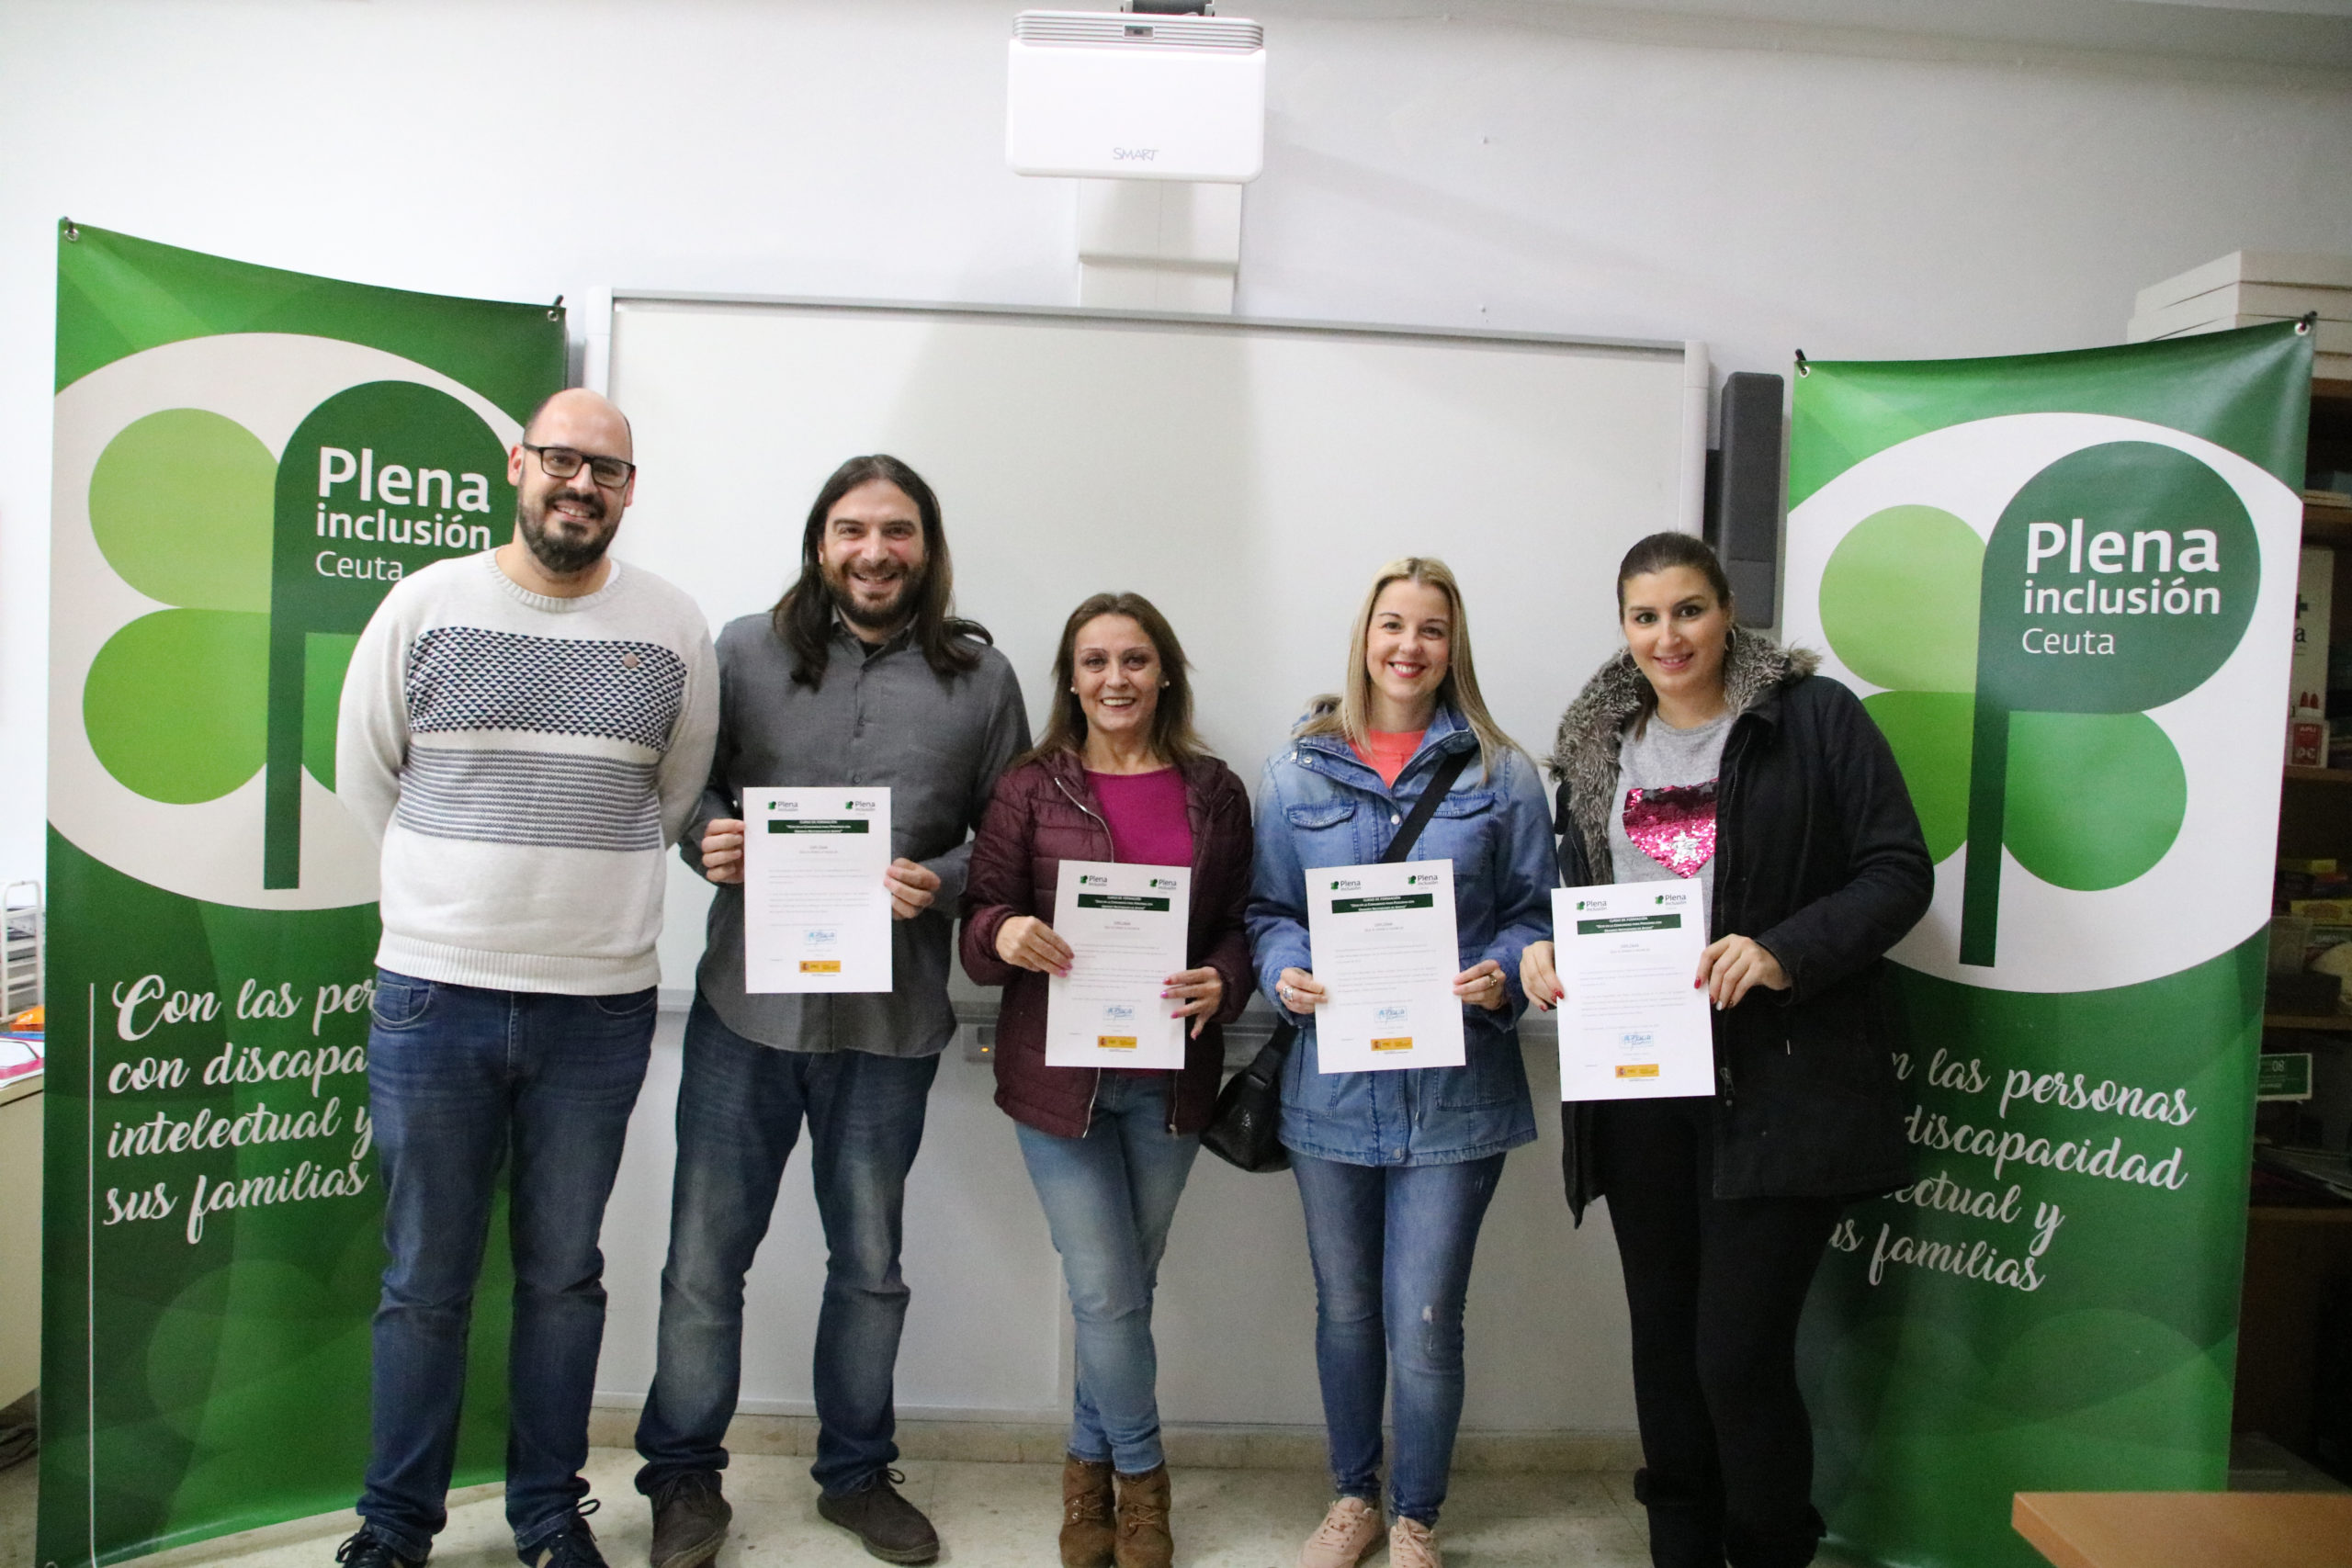 Ir a Plena inclusión Ceuta entrega los diplomas de sus cursos online